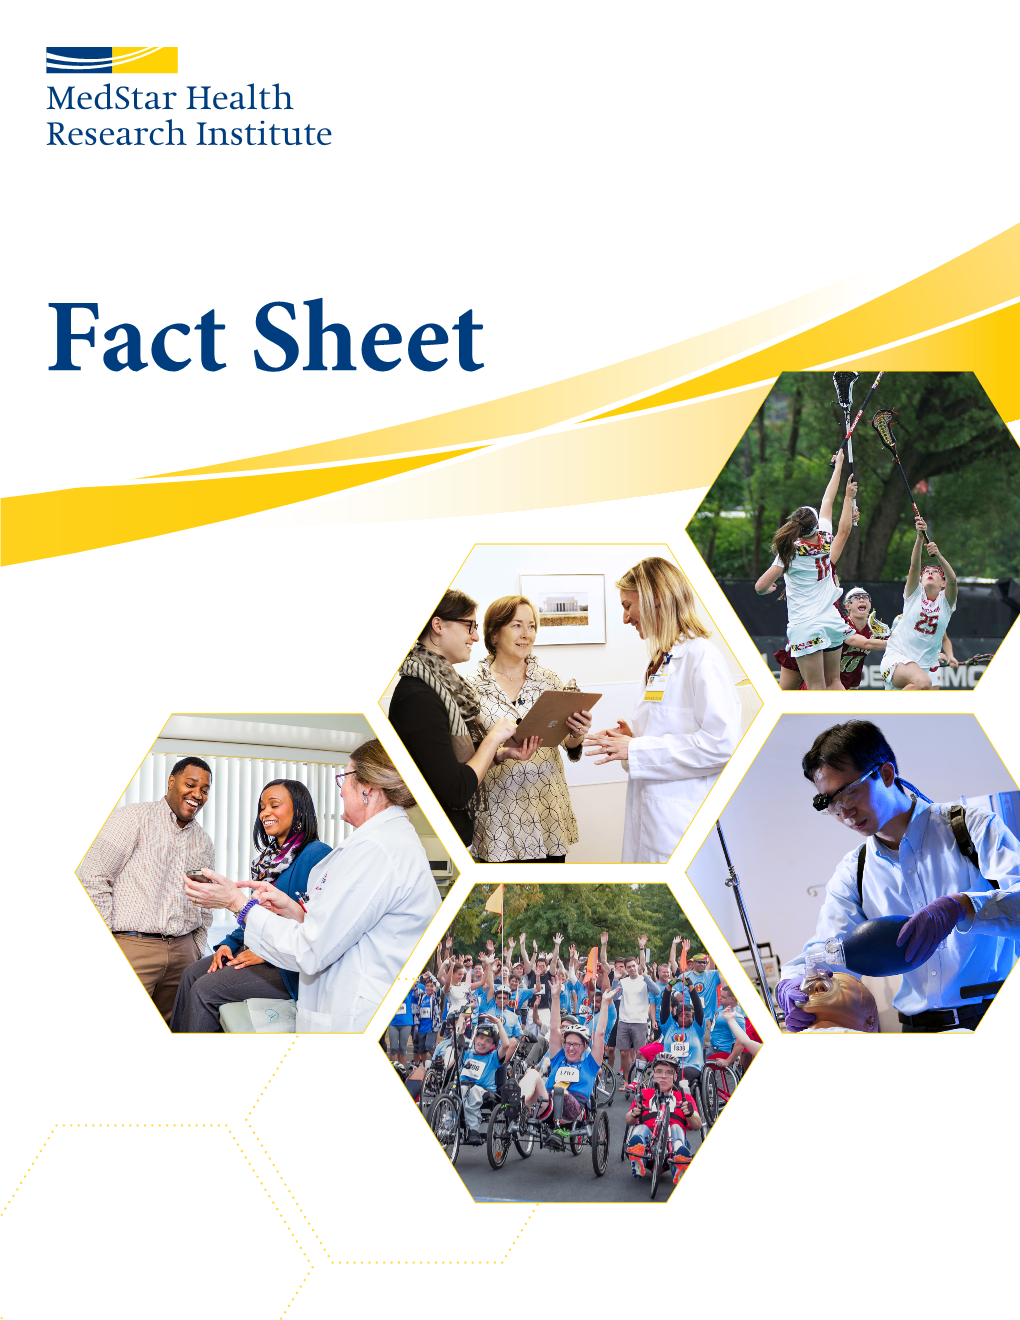 Fact Sheet About Medstar Health